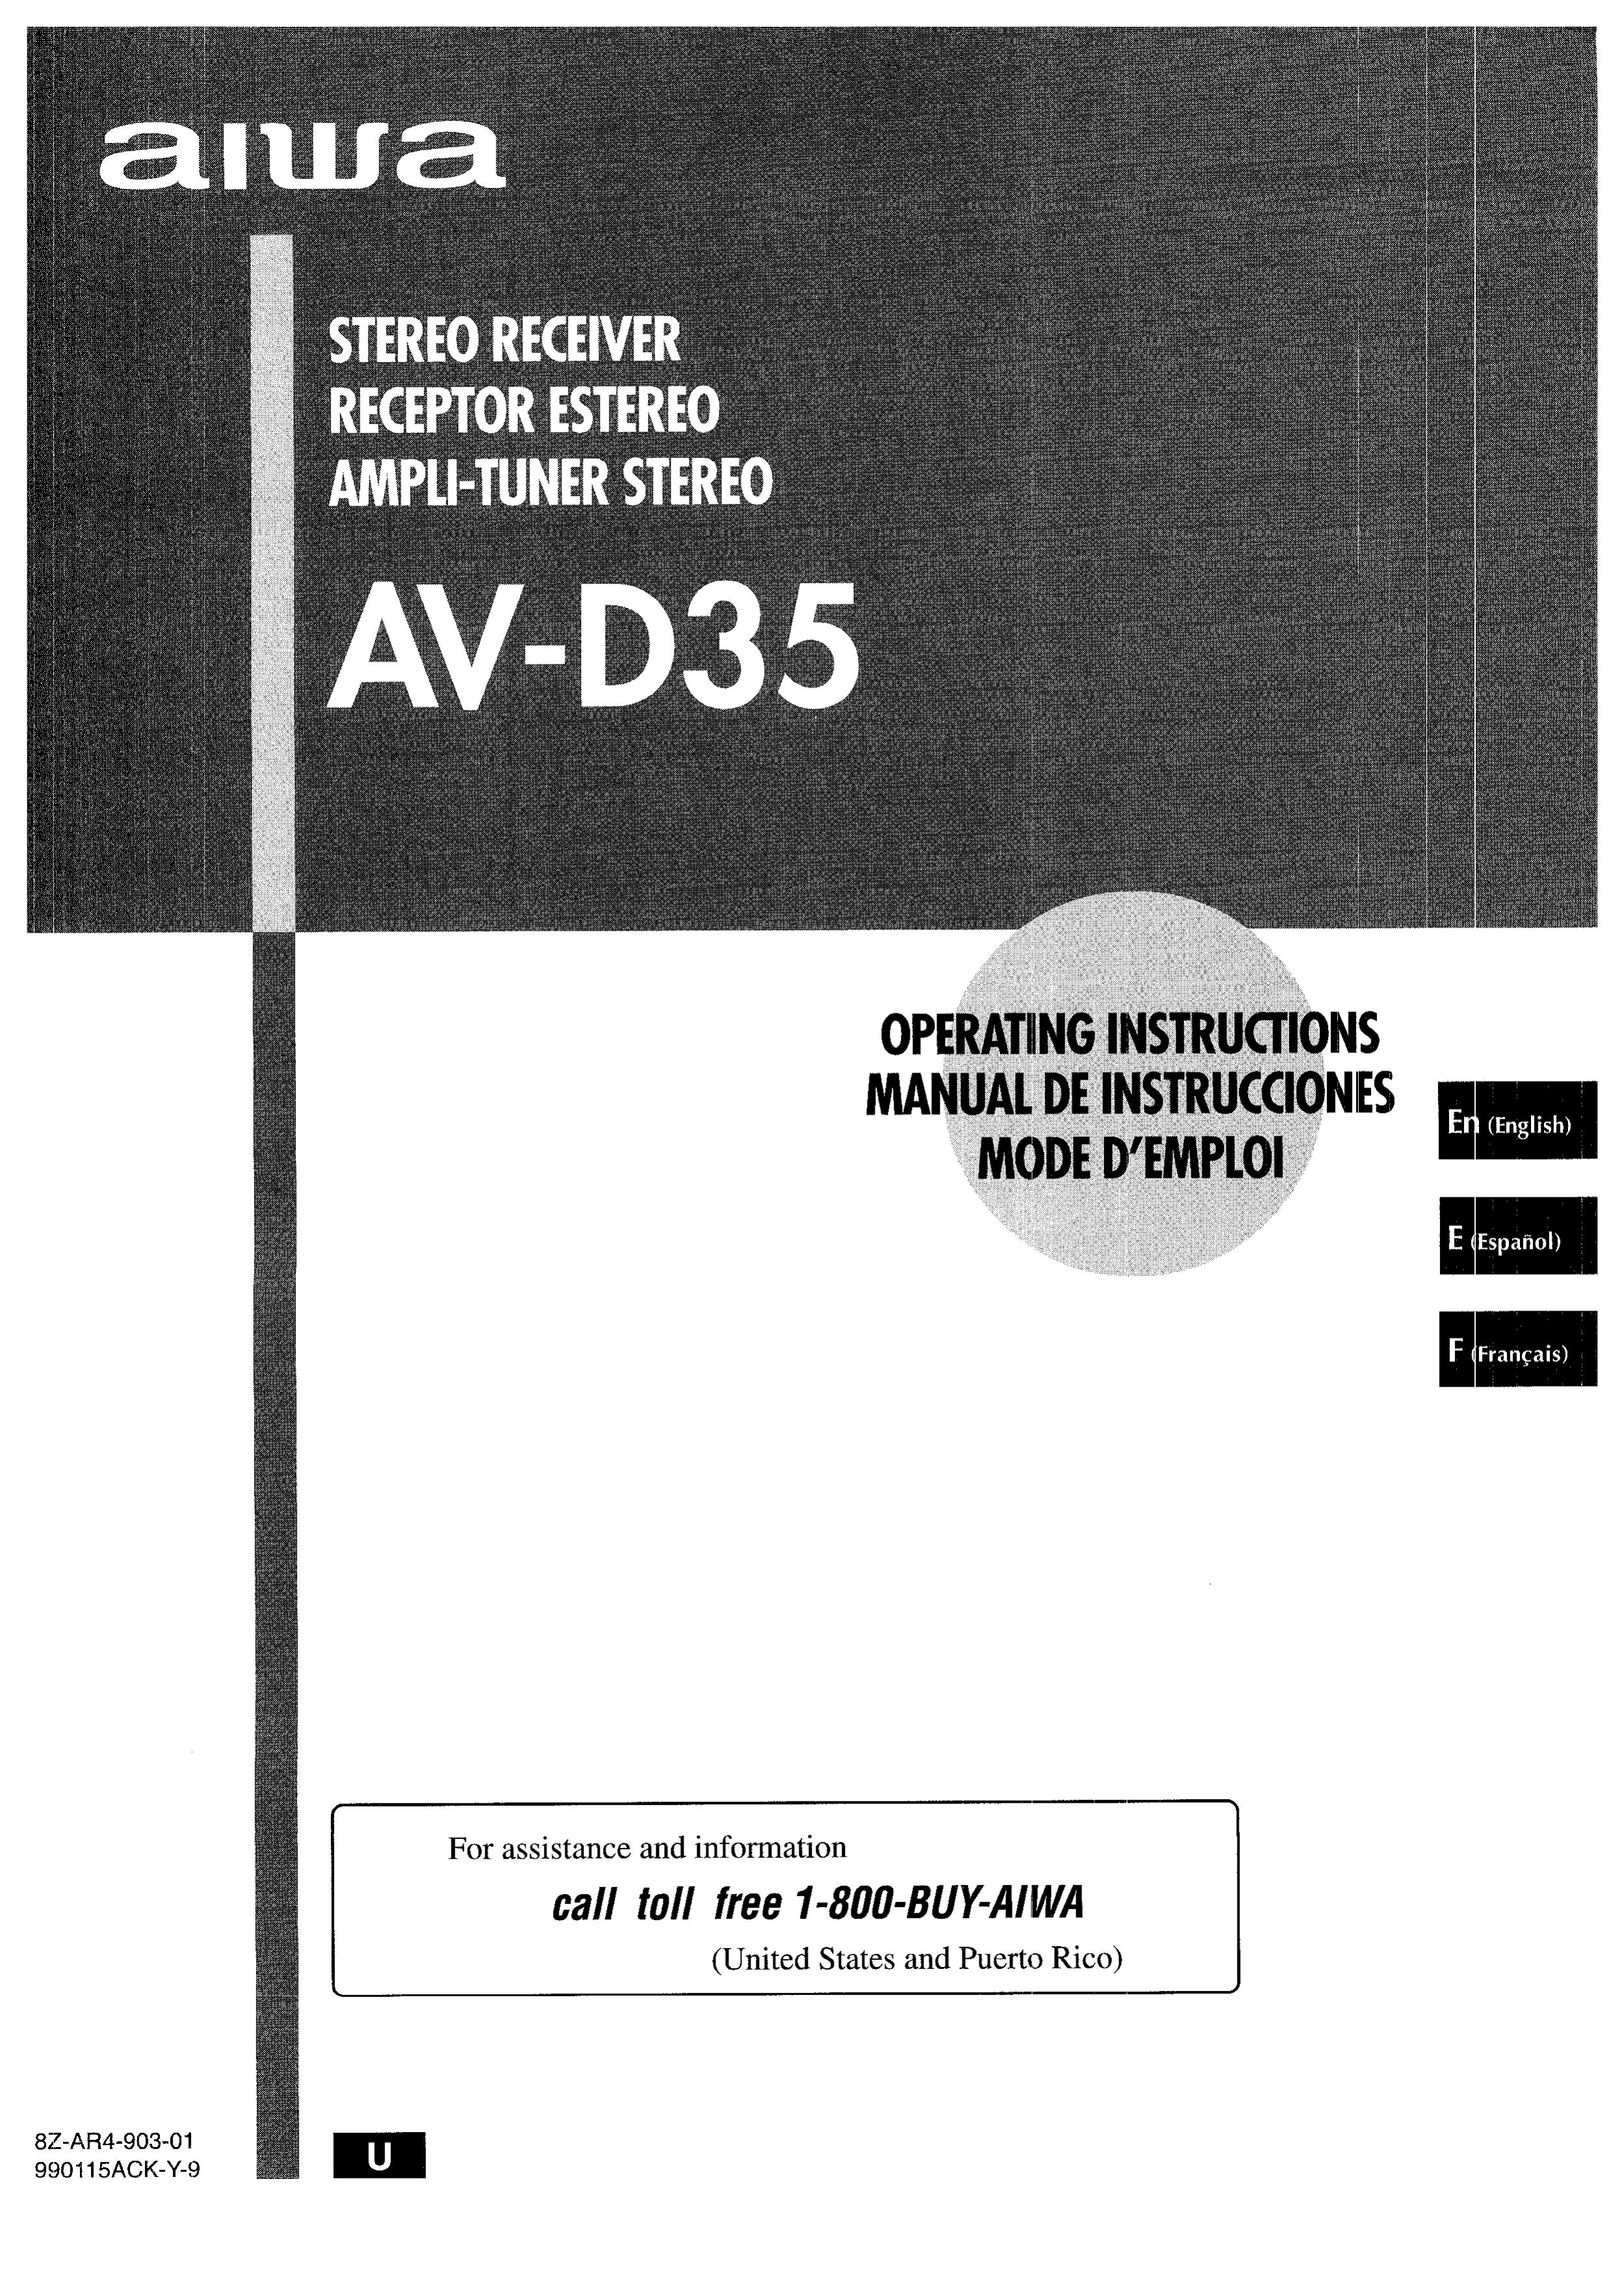 Aiwa AV-D35 Stereo Receiver User Manual